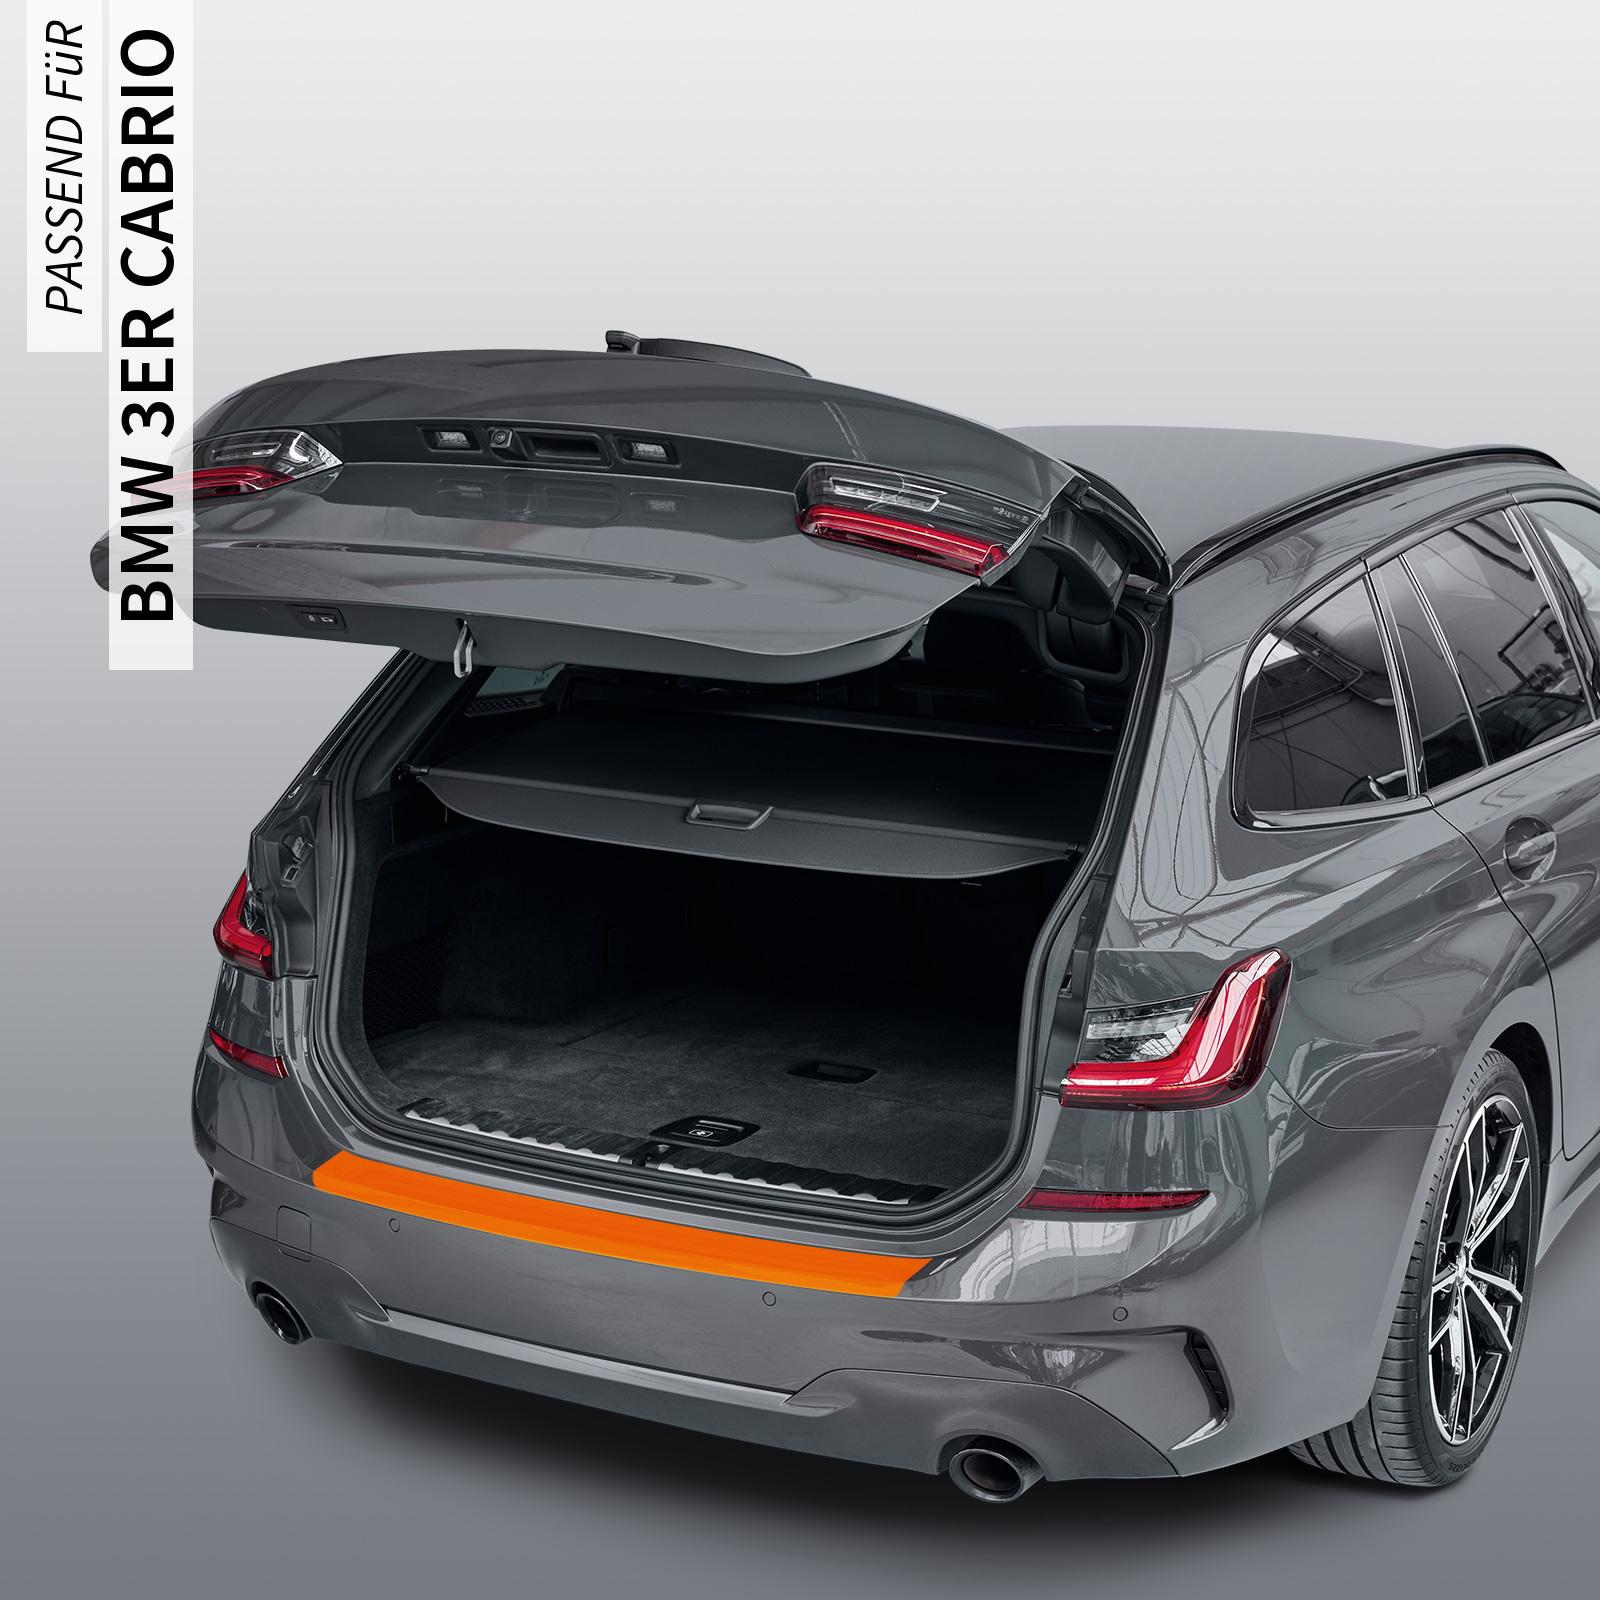 Ladekantenschutzfolie - Transparent Glatt MATT 110 µm stark  für BMW 3er Cabrio Typ E93, BJ 2007-10/2014